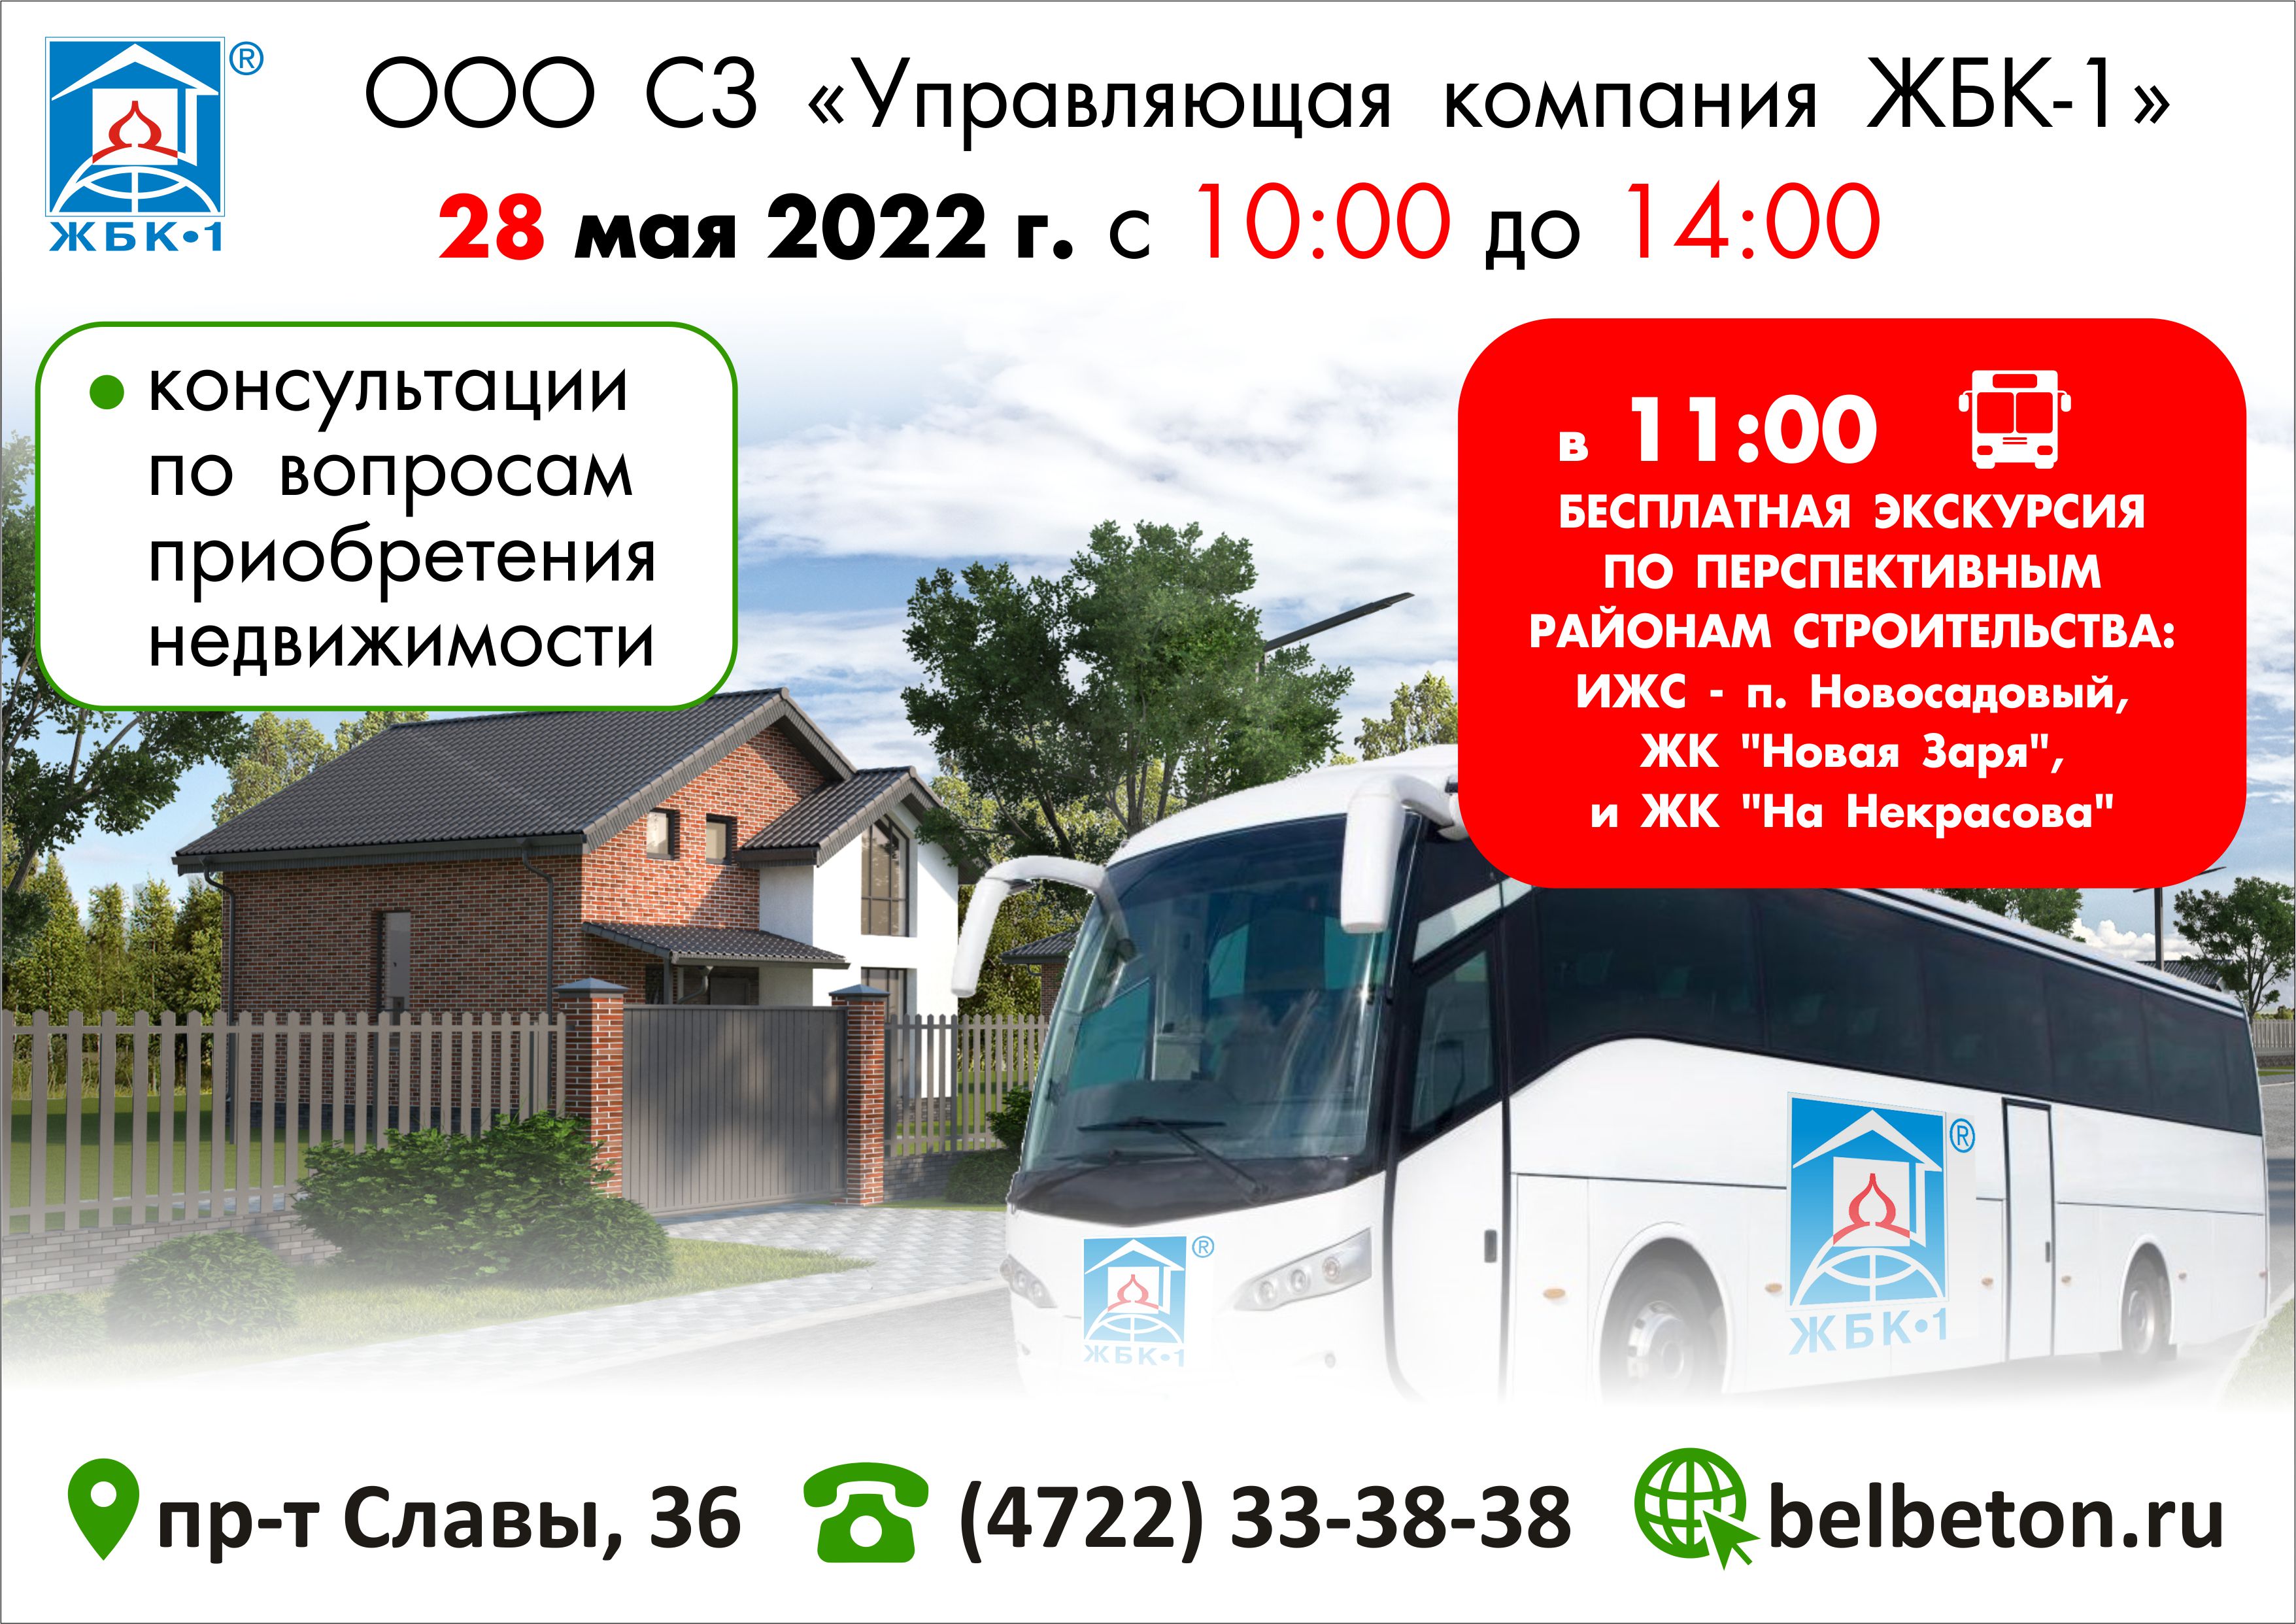 Внимание! ЖБК-1 предлагает готовые квартиры в жилых комплексах На Некрасова и Новая Заря